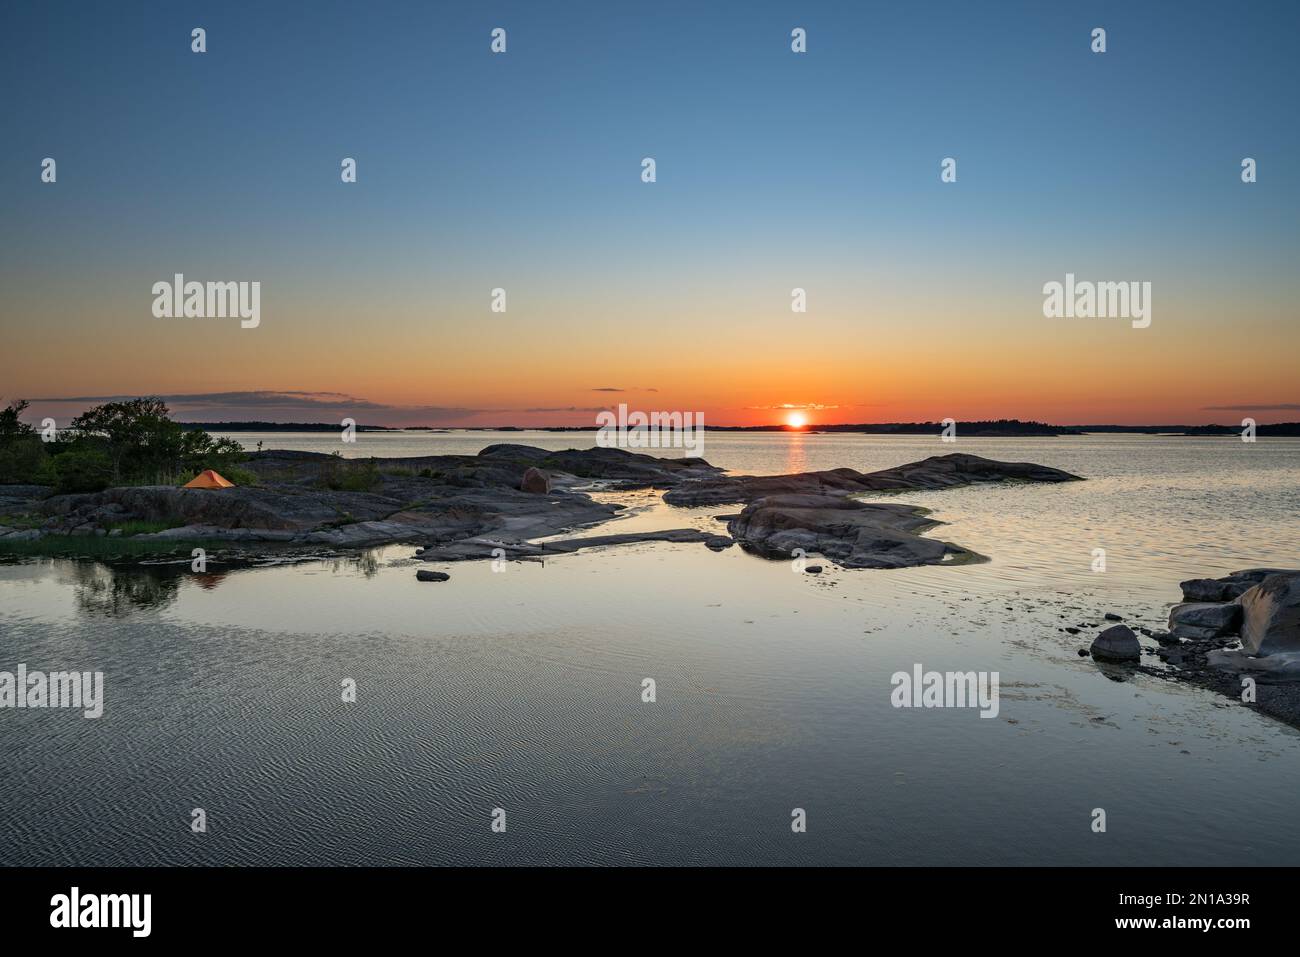 Sunset at Söderskär island, Kirkkonummi, Finland Stock Photo